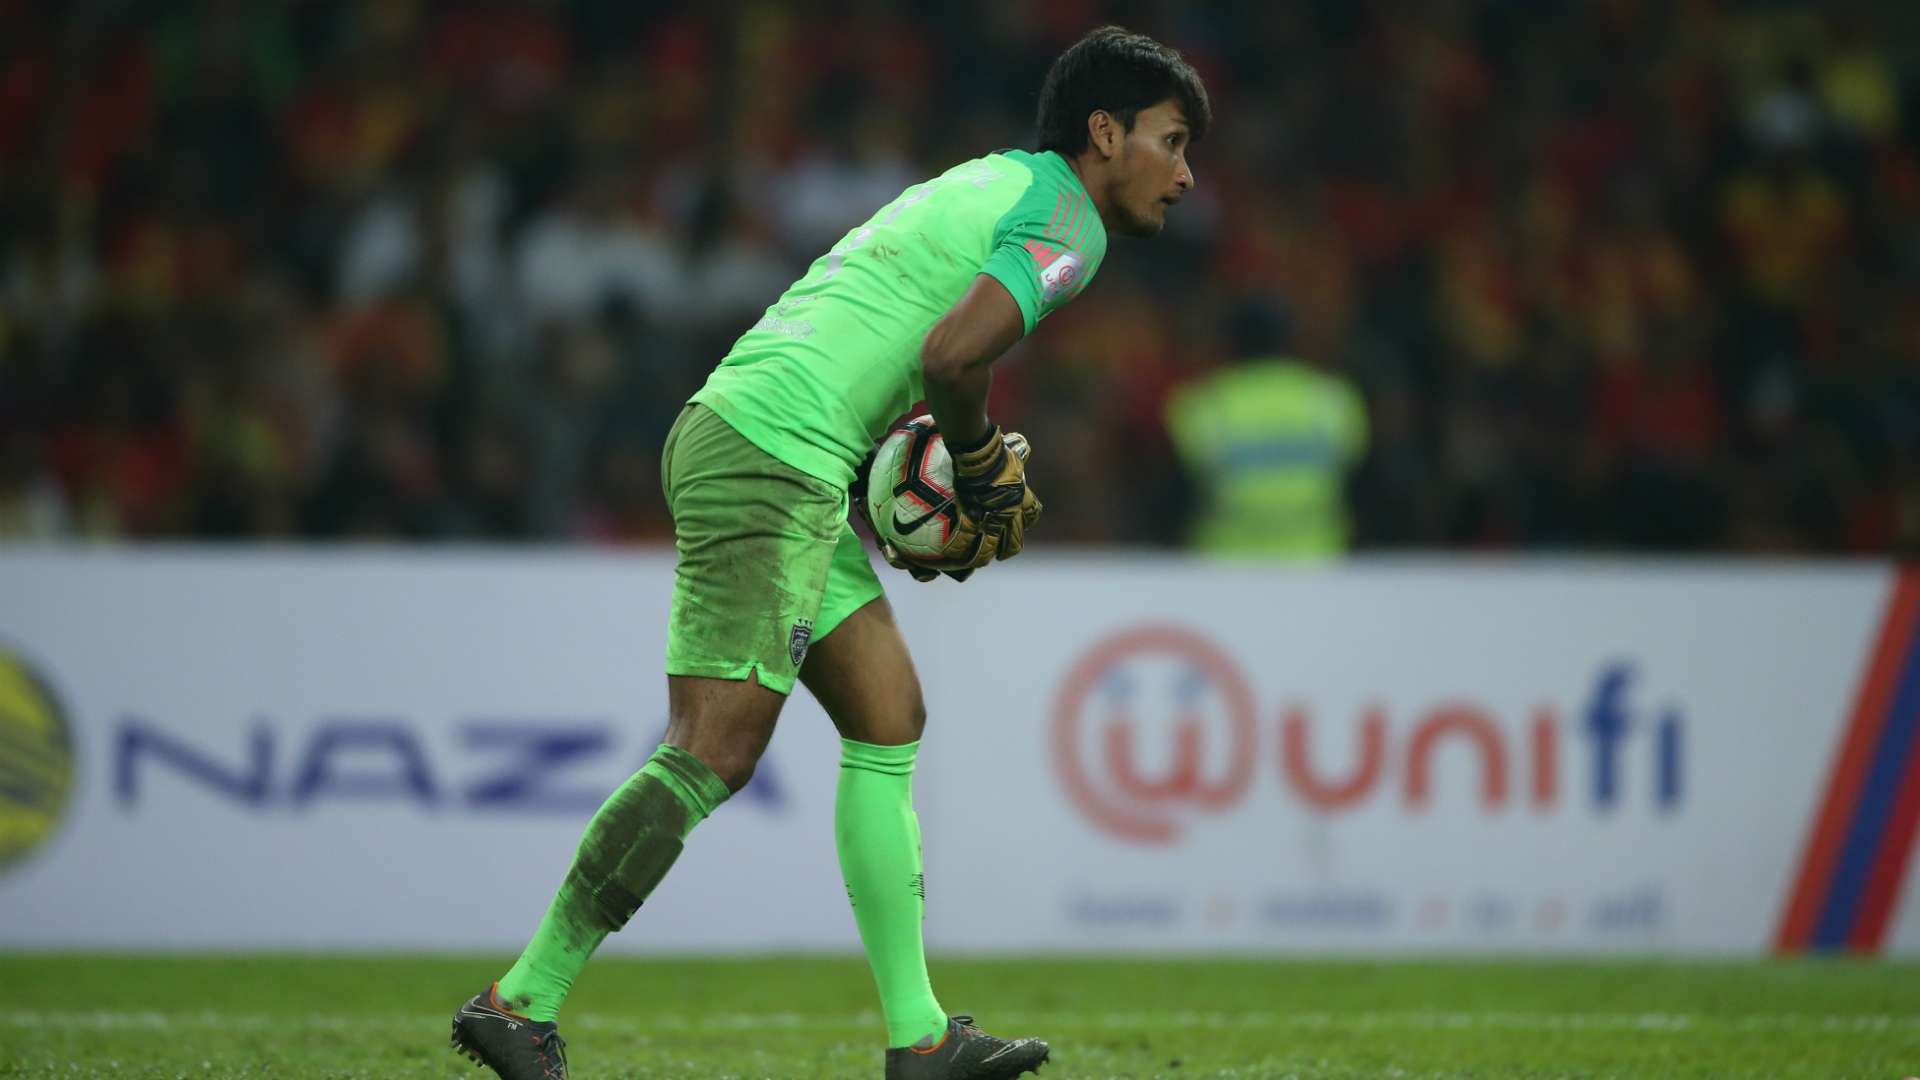 Farizal Marlias, Selangor v Johor Darul Ta'zim, Super League, 1 Mar 2019